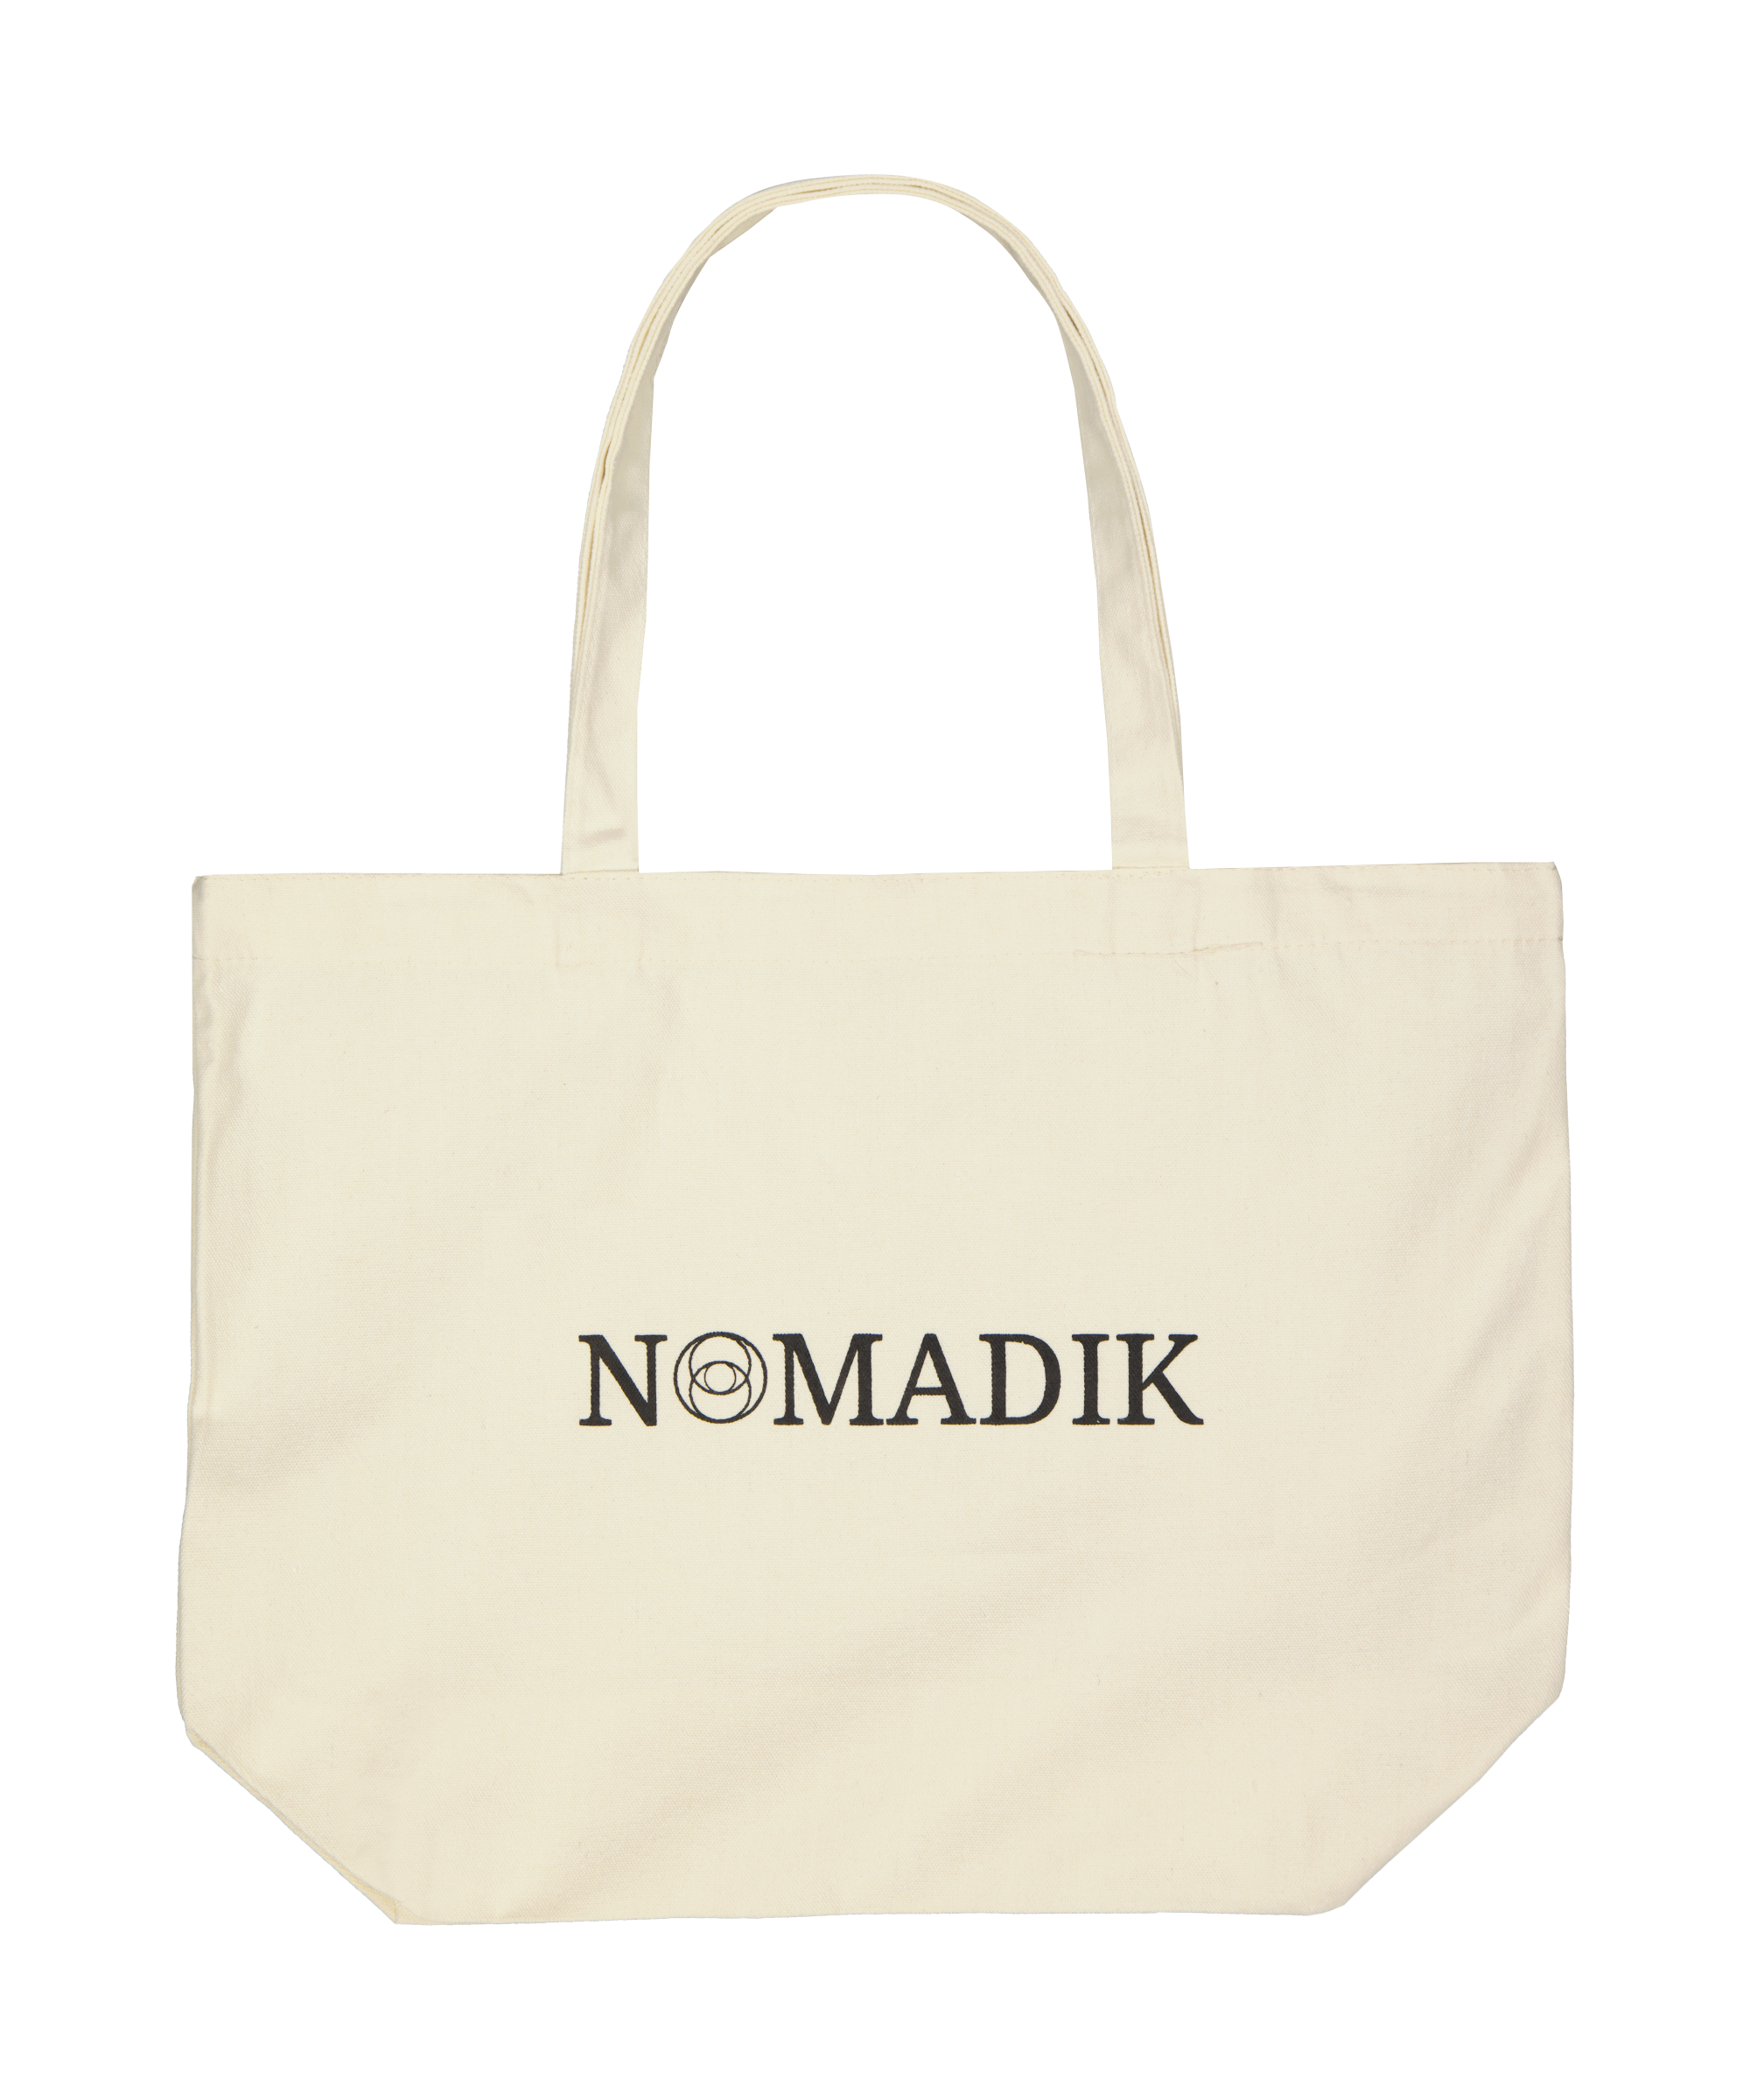 Stilvolle Stofftasche mit dem Nomadik Logo: Minimalistisches Design, hohe Funktionalität. Perfekte Ergänzung für den Alltag, Einkaufen, Strand oder Reisen.